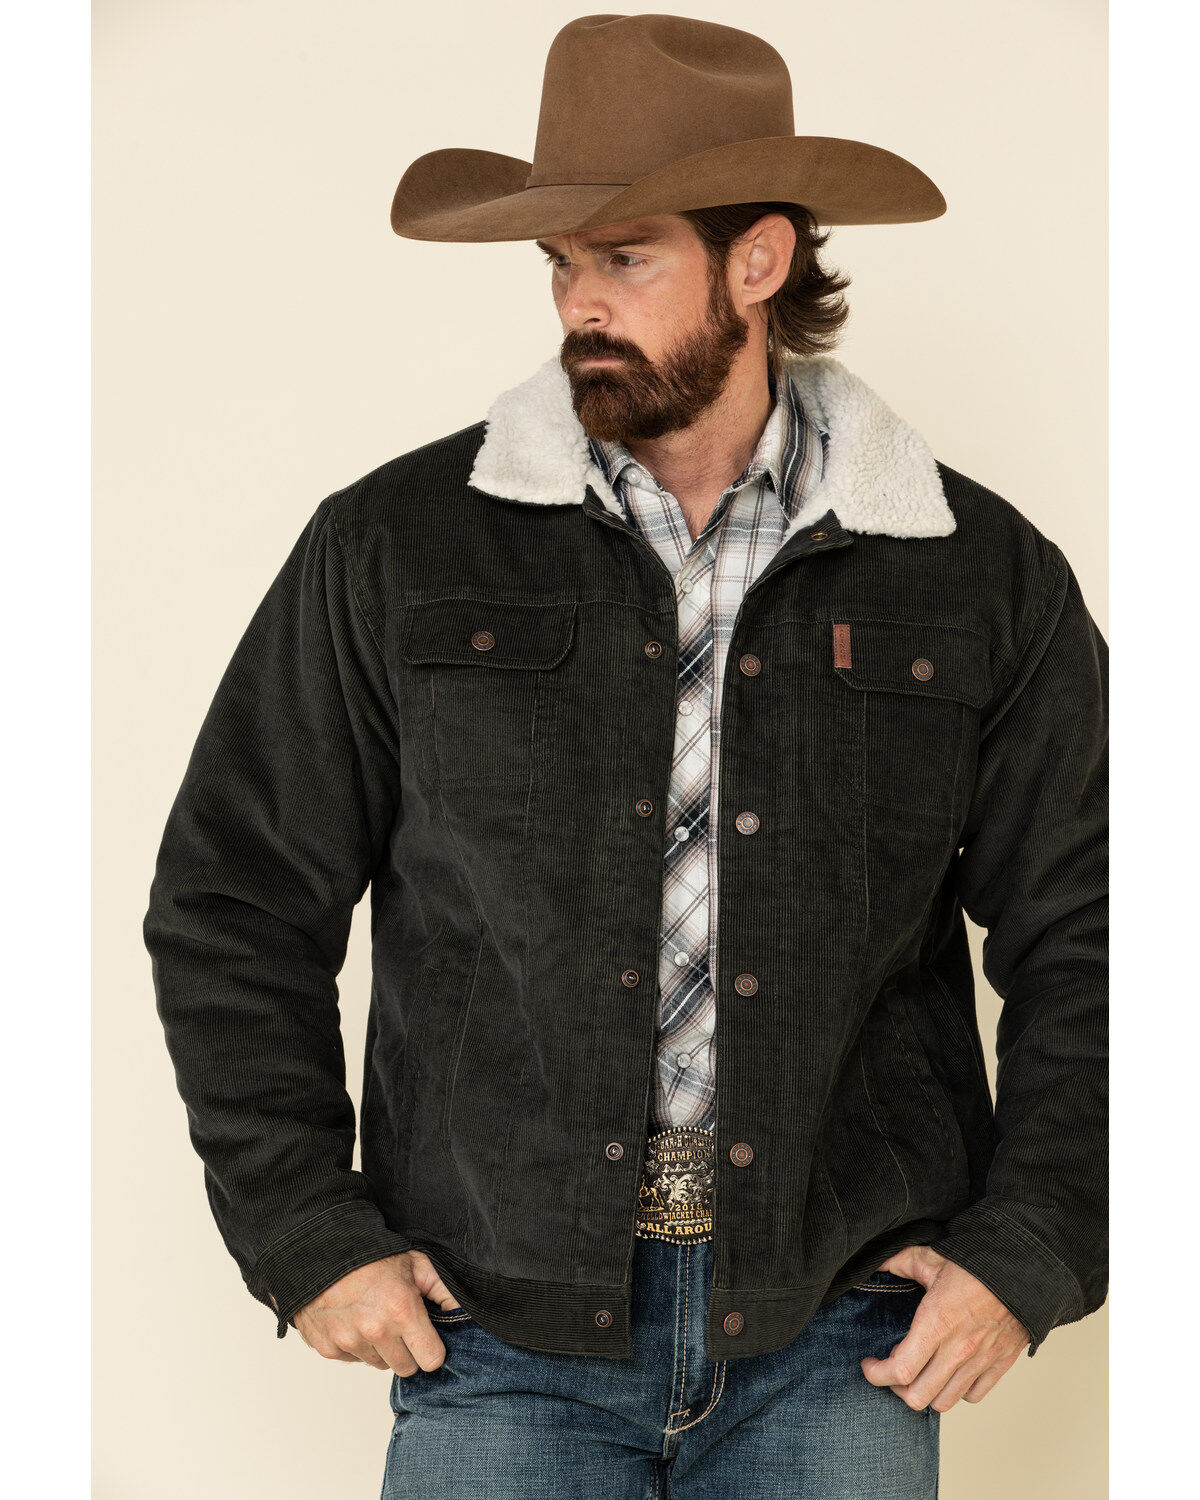 boot barn western jackets